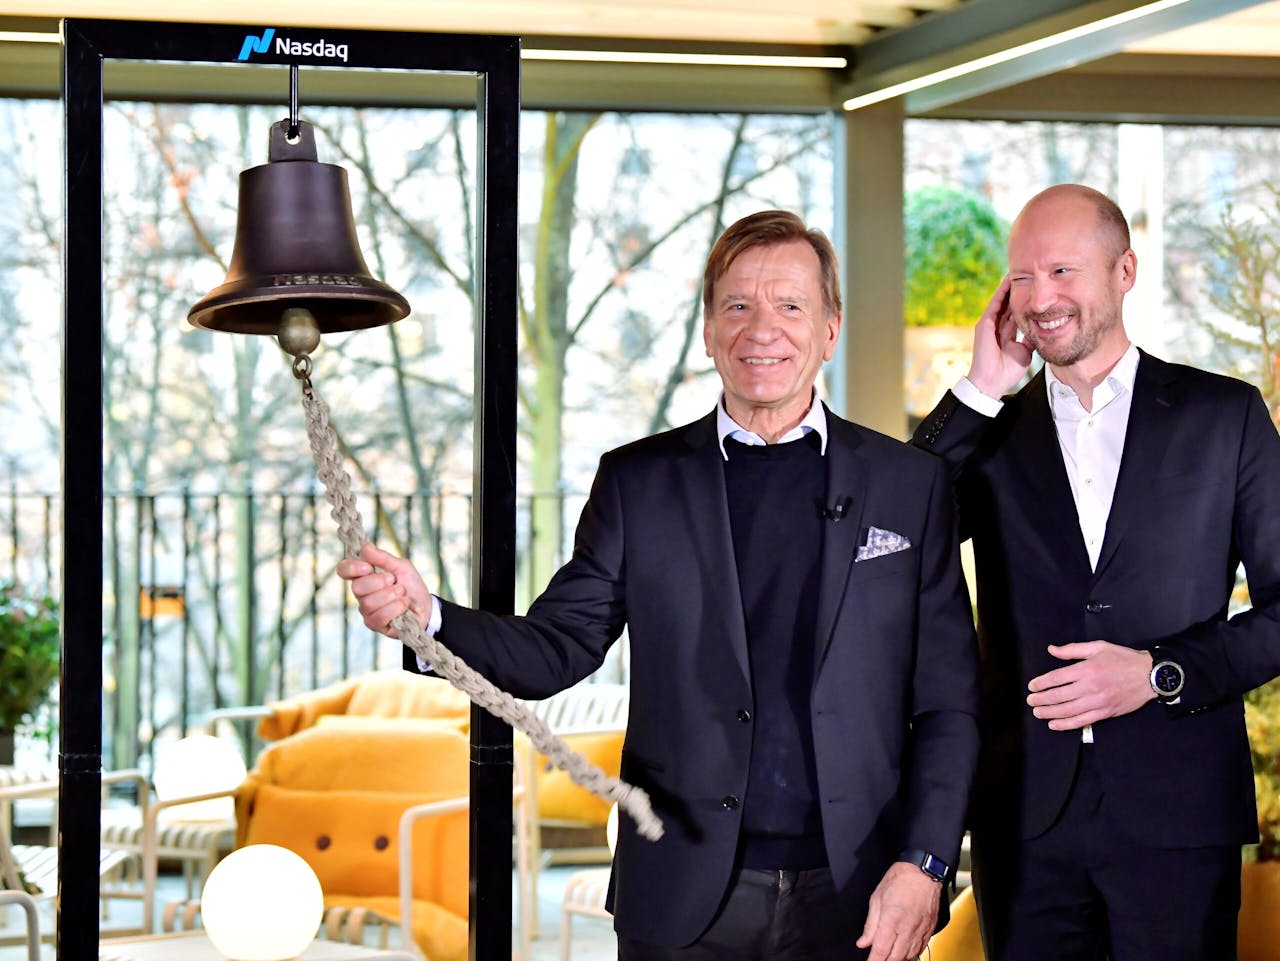 Ceo Håkan Samuelsson van Volvo en cfo Björn Annwall vrijdag bij de openingsceremonie van de beurs van Stockholm toen de Zweedse autofabrikant zijn beursgang beleefde.